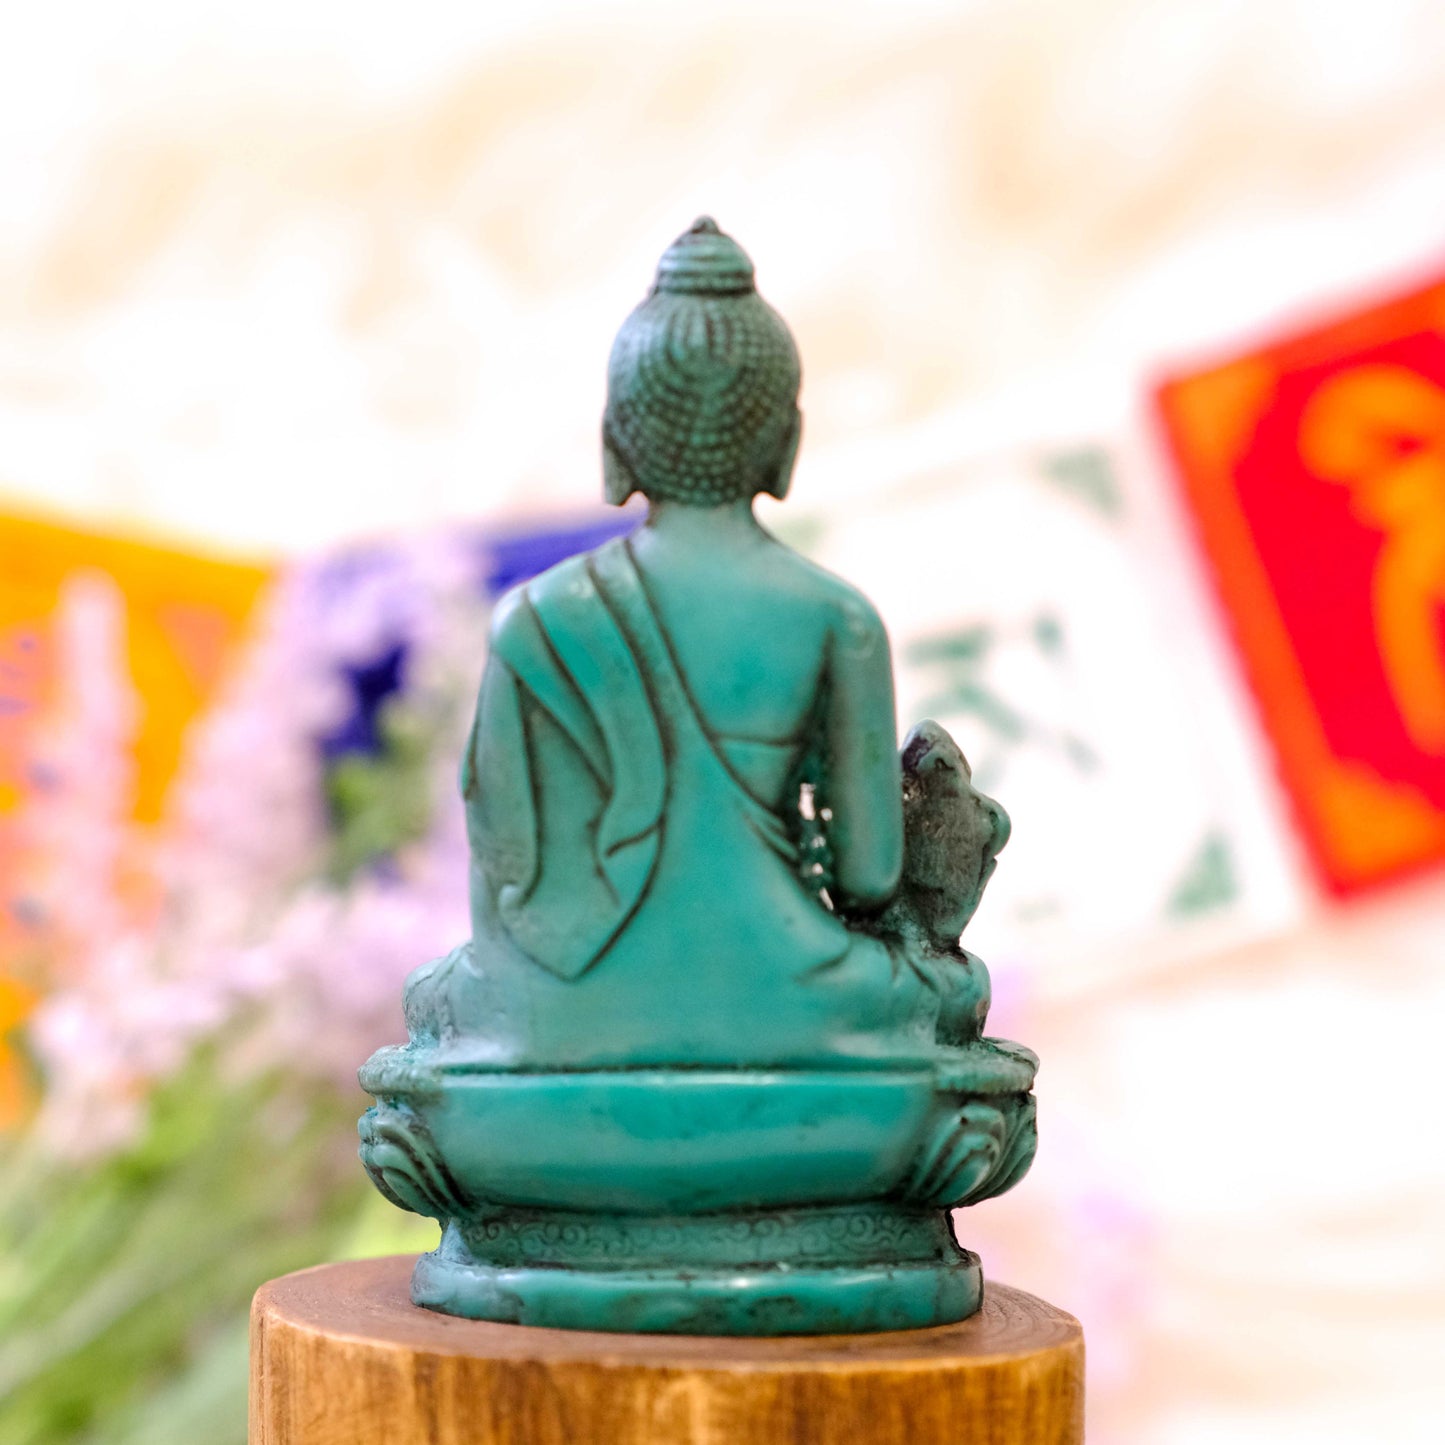 Handmade Healing Buddha Statue